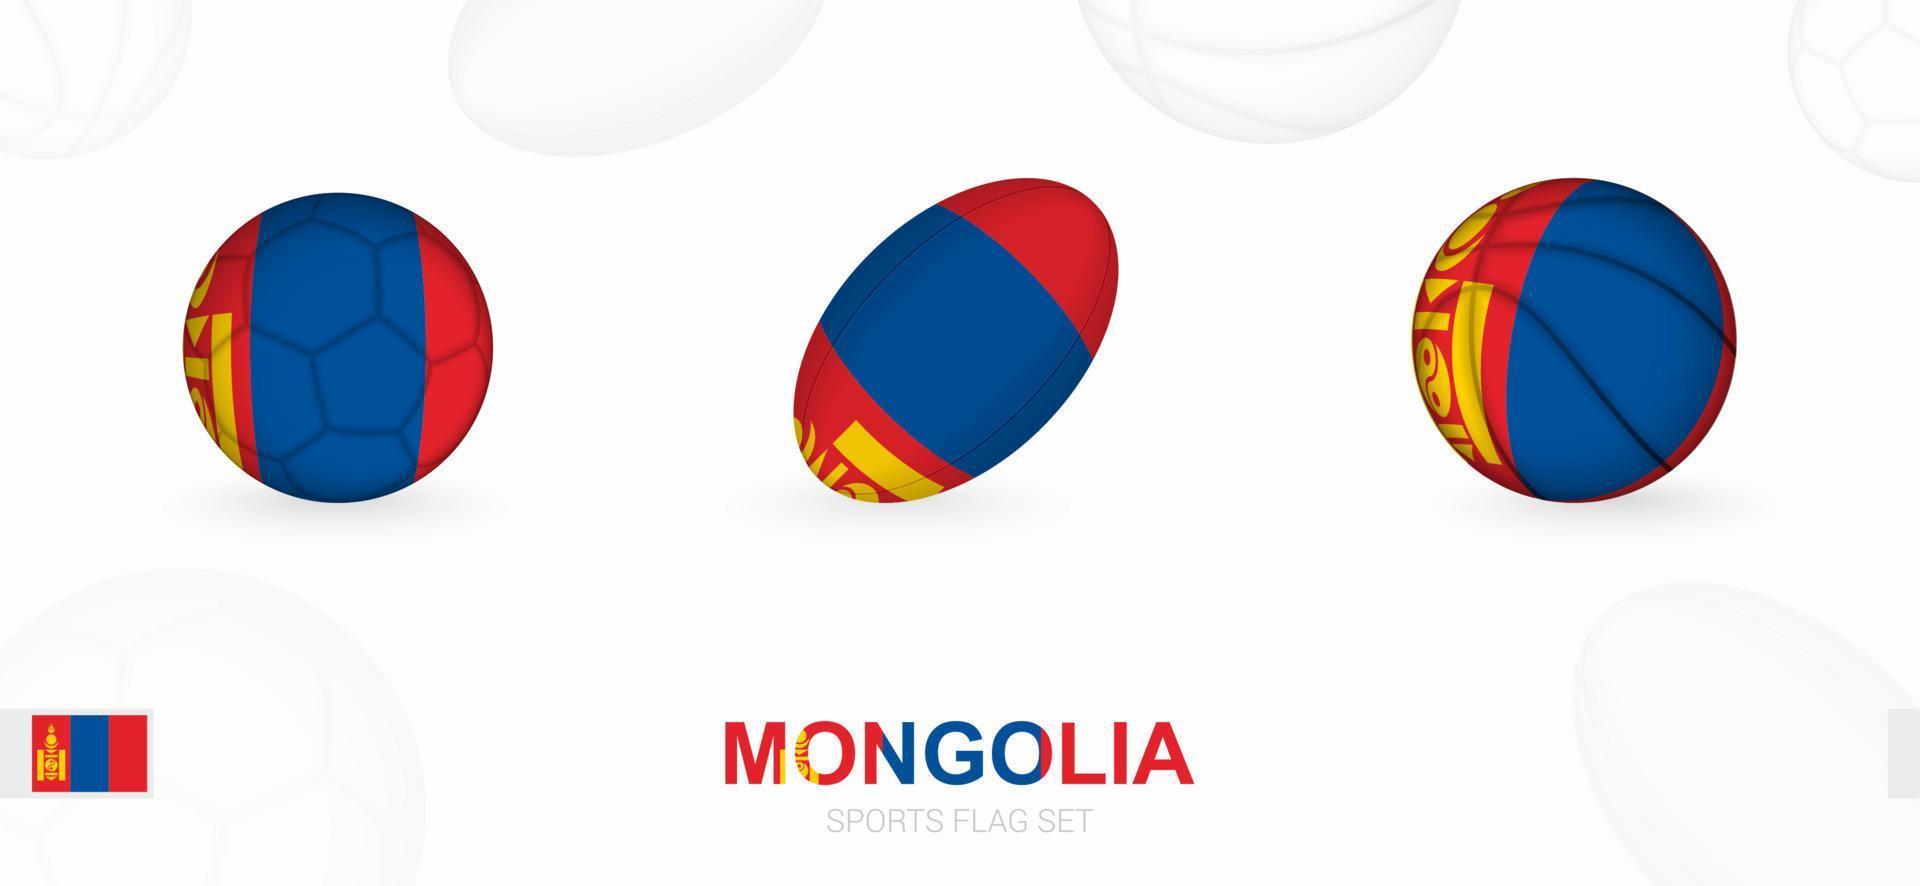 Esportes ícones para futebol, rúgbi e basquetebol com a bandeira do Mongólia. vetor